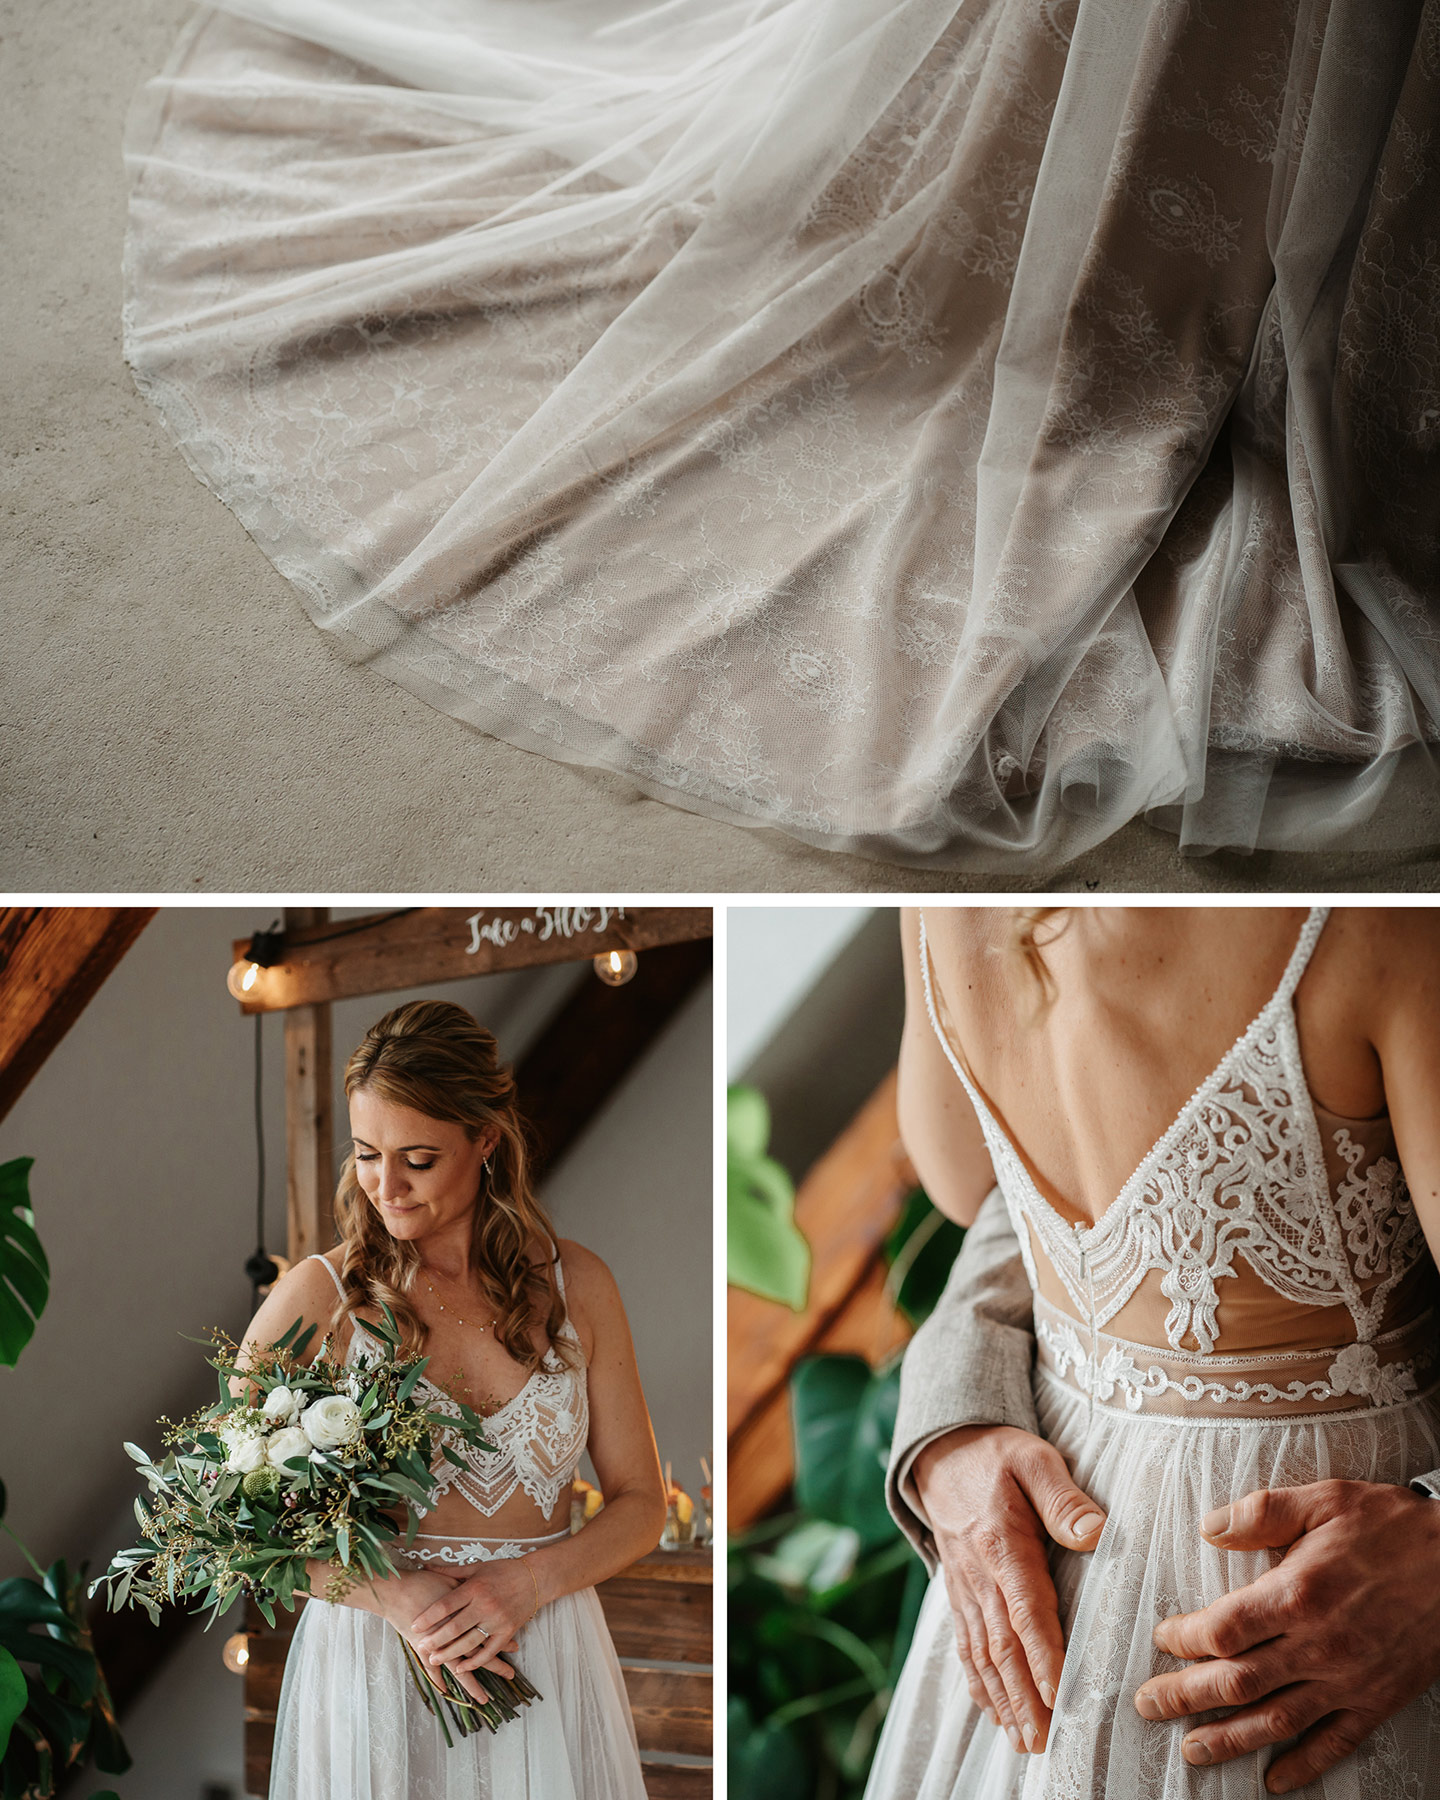 Die Braut trägt ein bodenlanges Kleid aus creme farbiger Spitze und einem tiefen Rückenausschnitt. Der Brautstrauß besteht aus weißen Blüten und Eukalyptus.